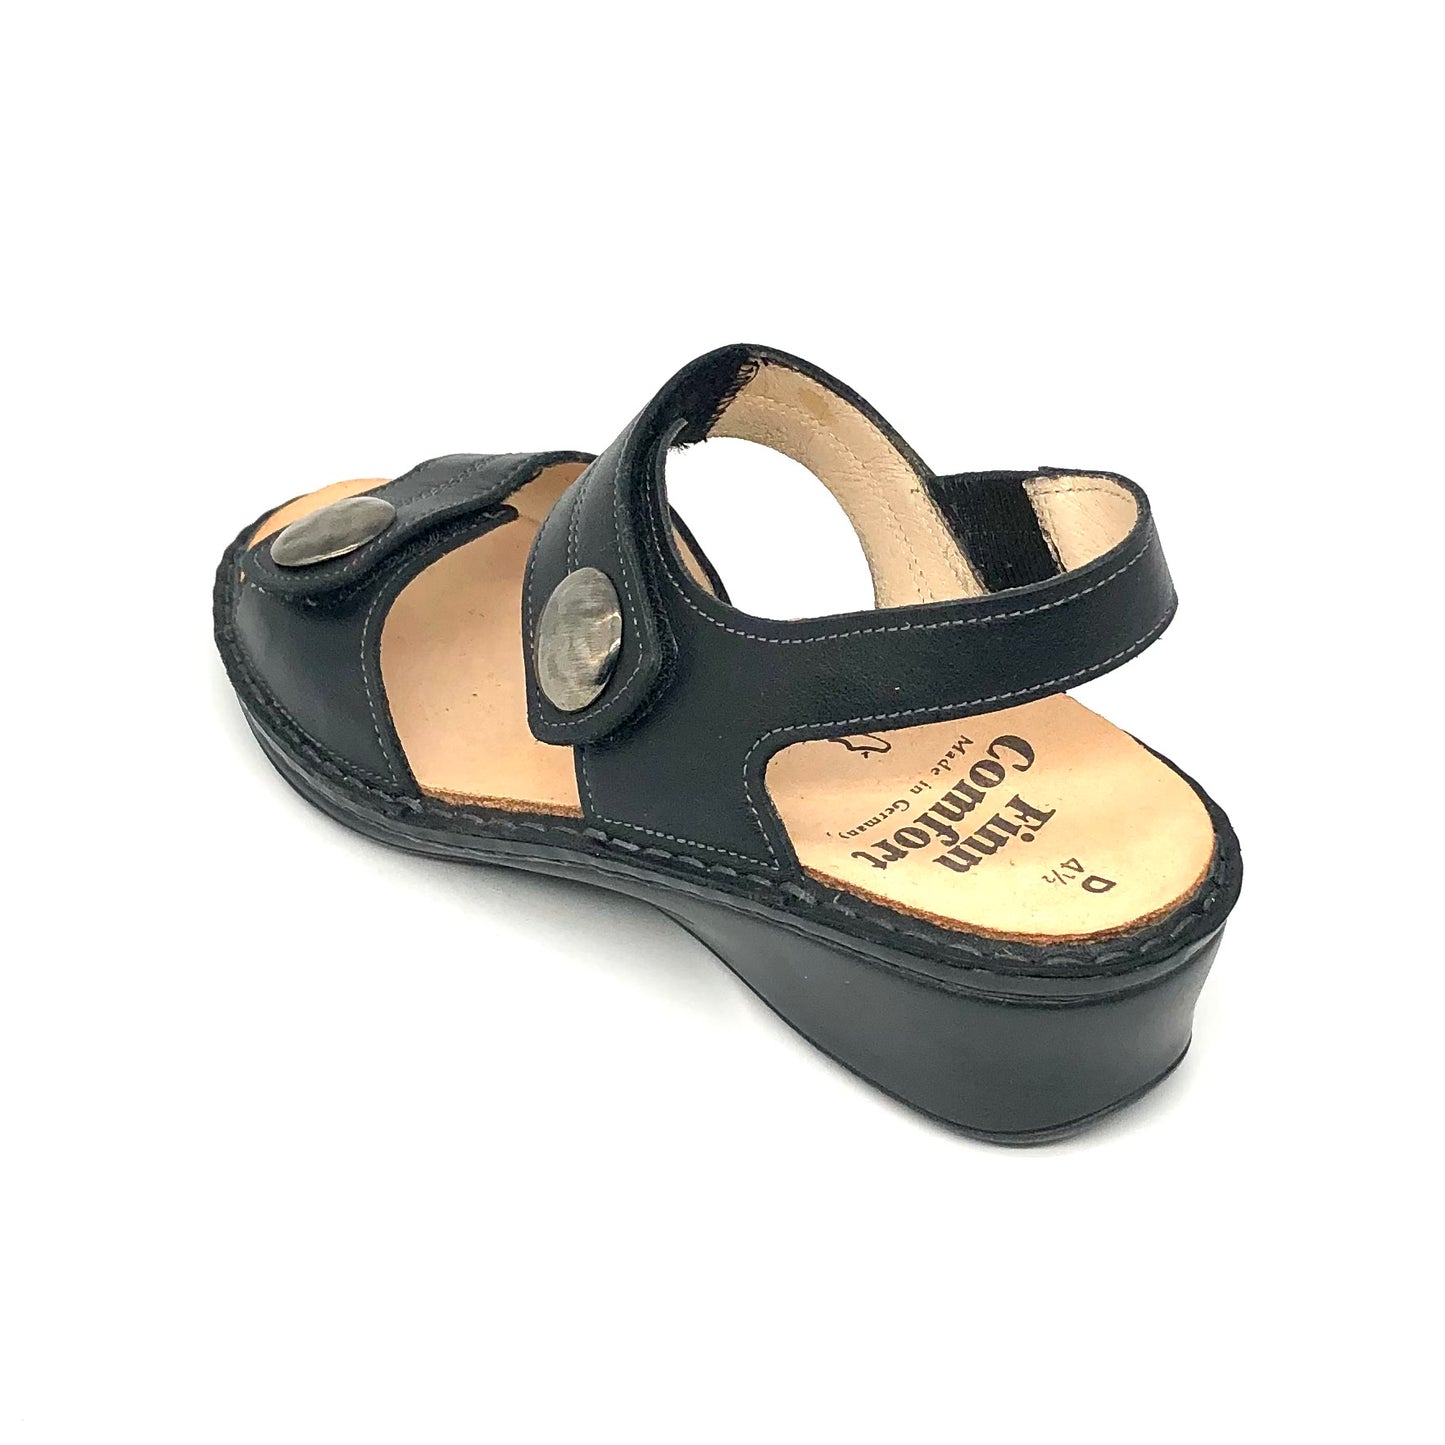 Damen Sandalette schwarz von Finn Comfort 15790